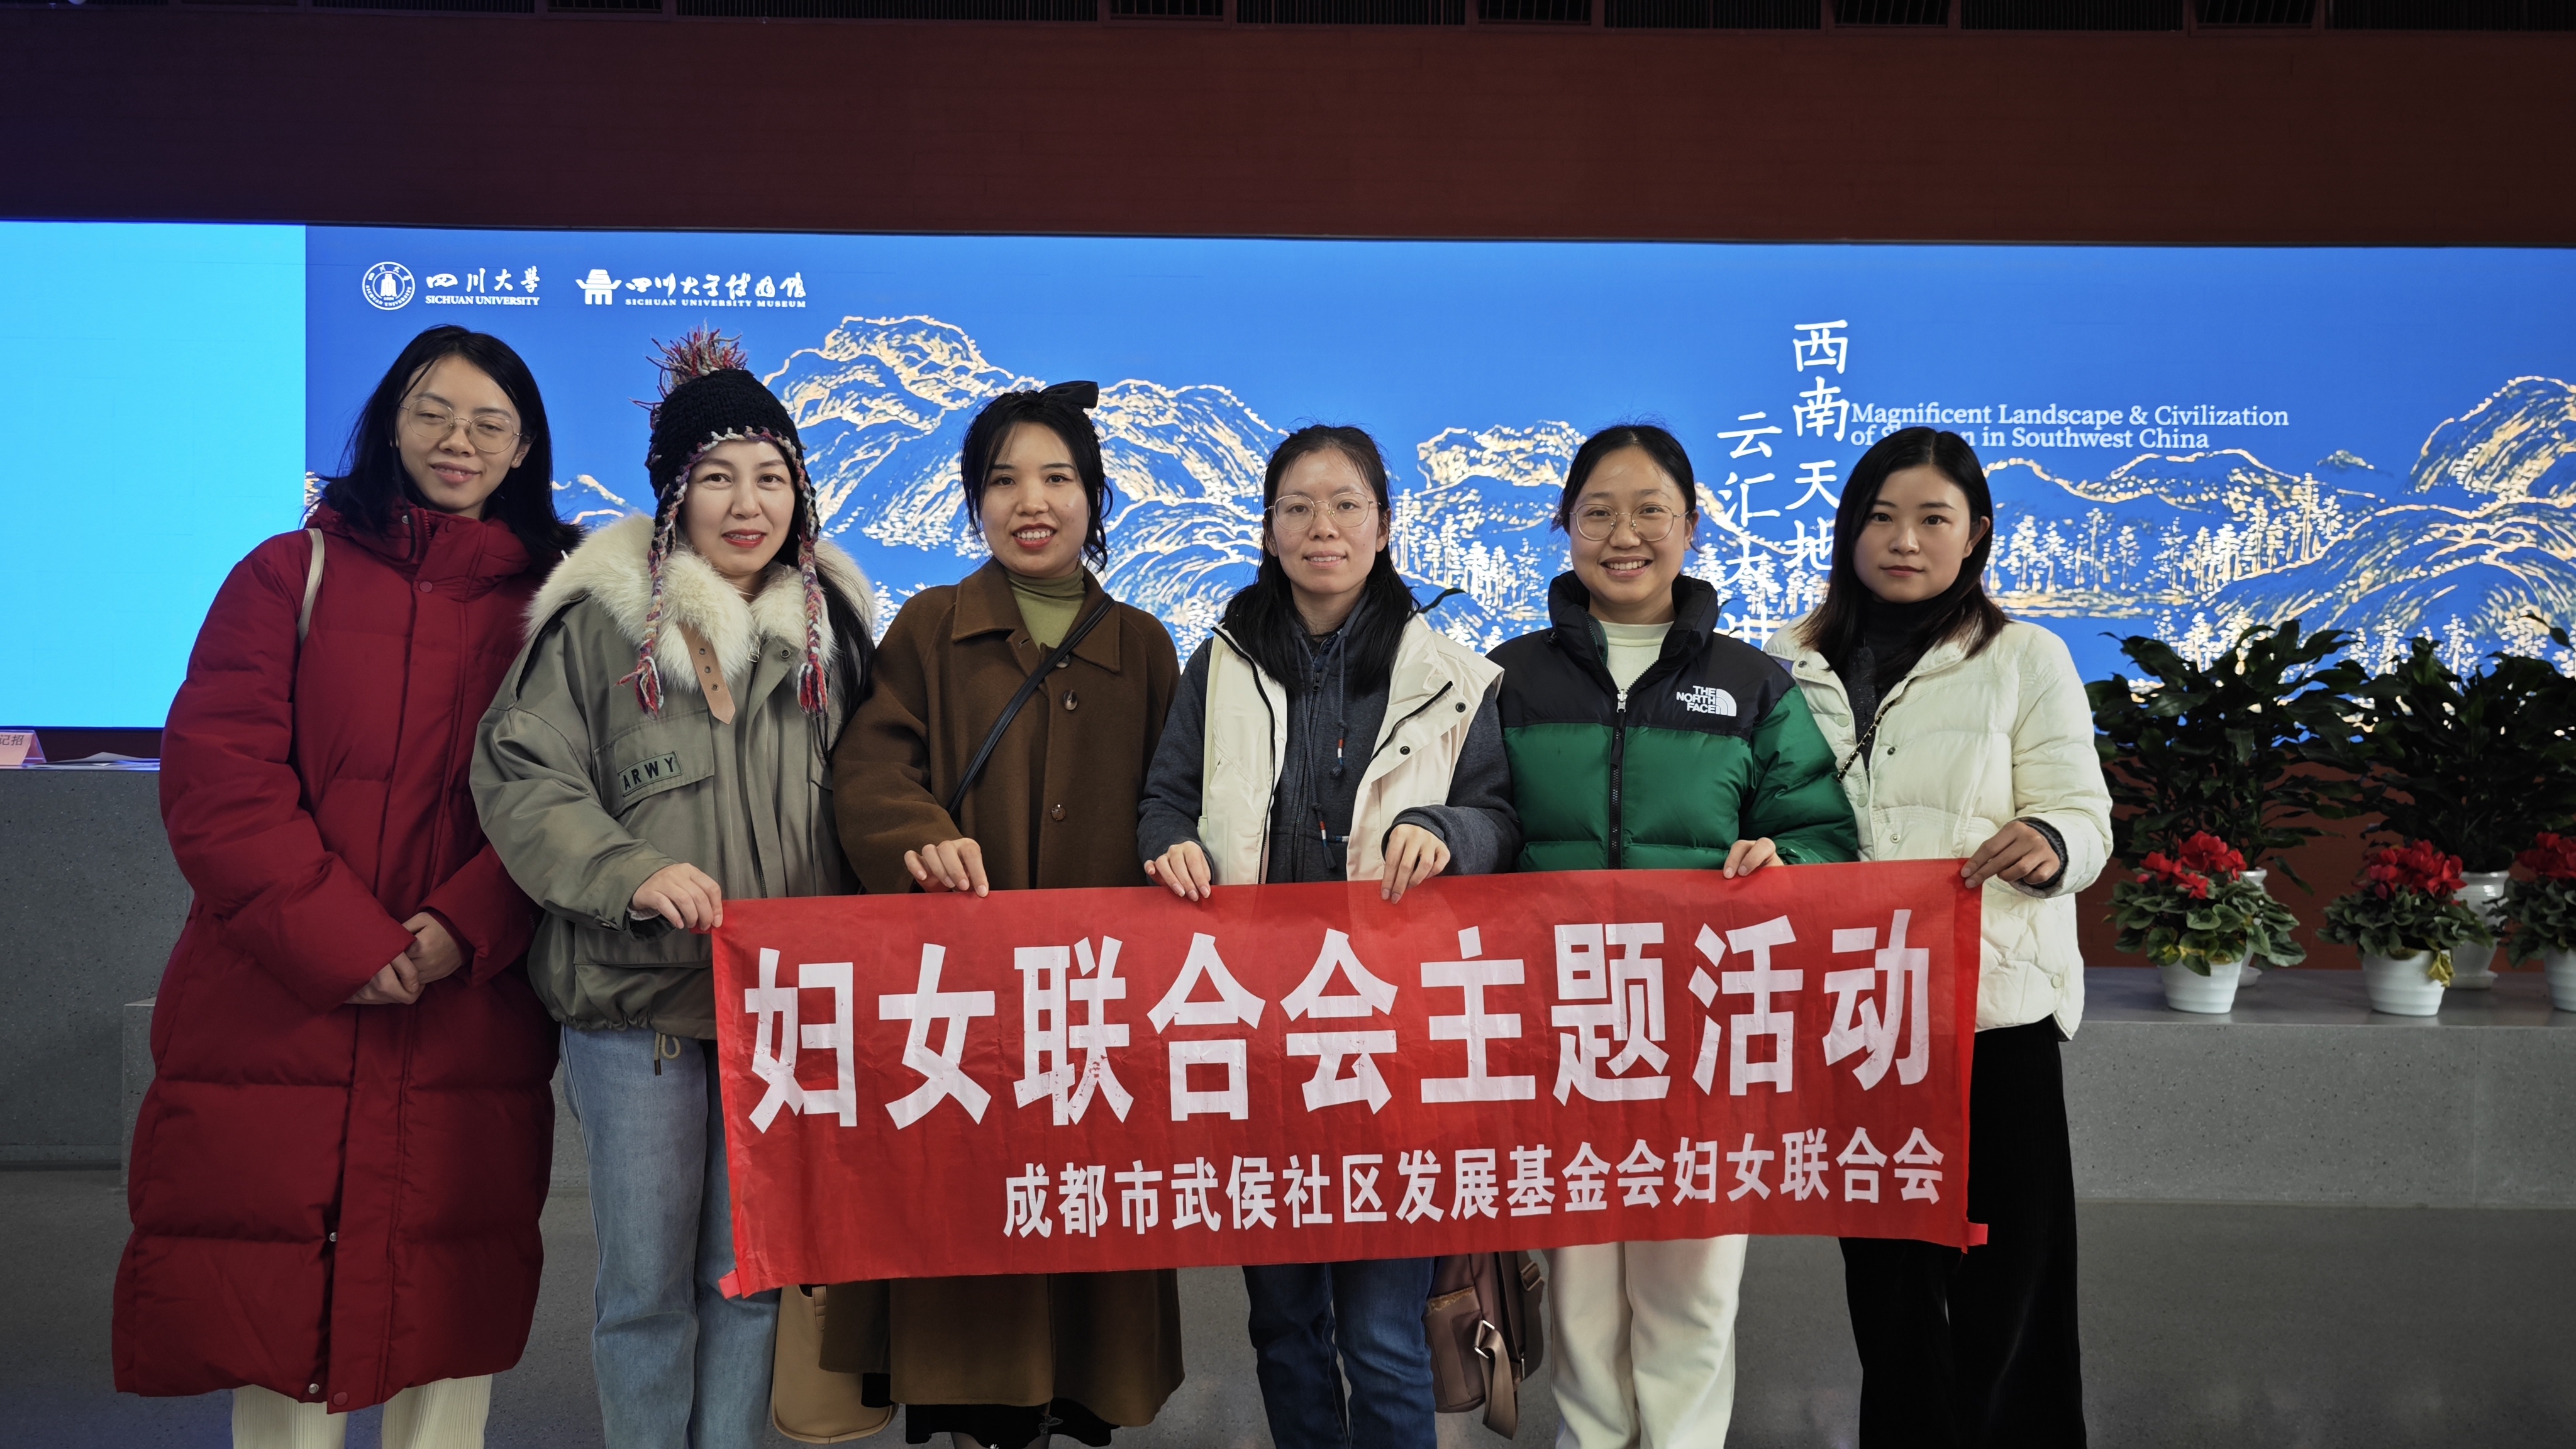 基金会妇女小组参观四川大学博物馆